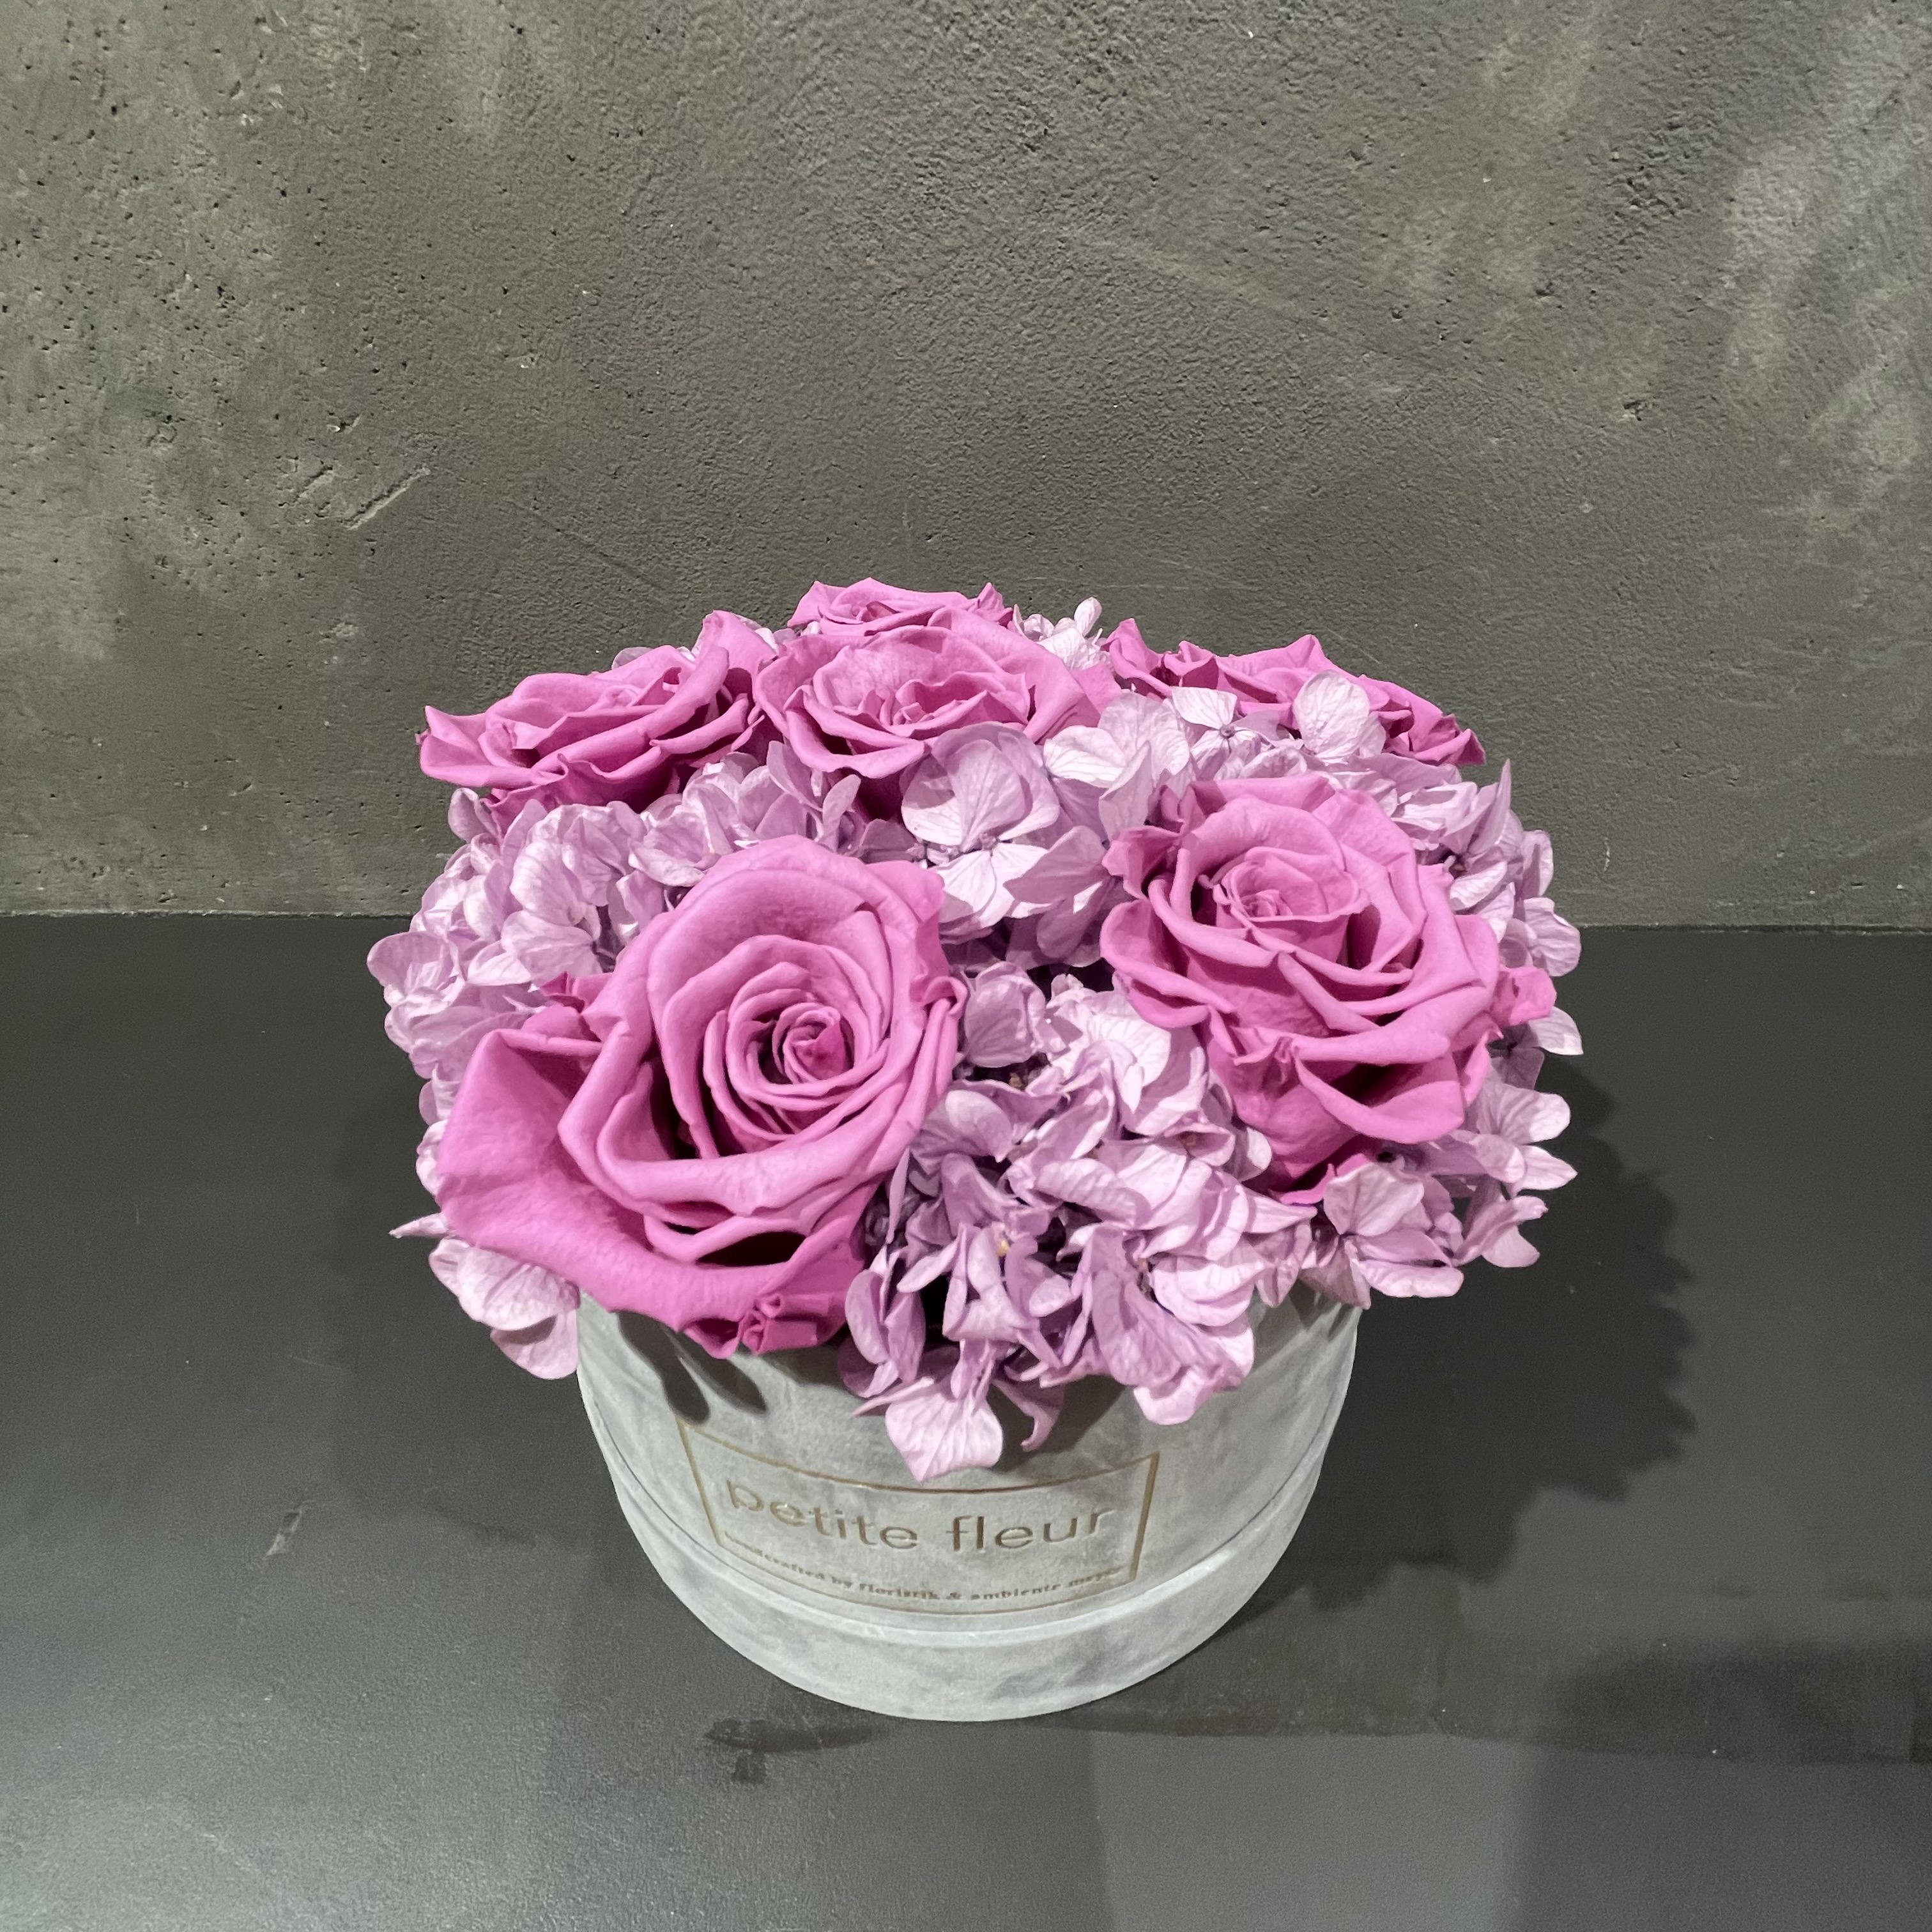 Petite Fleur Flowerbox Infinity Rosen in grauer Velvet-Gold-Edition 